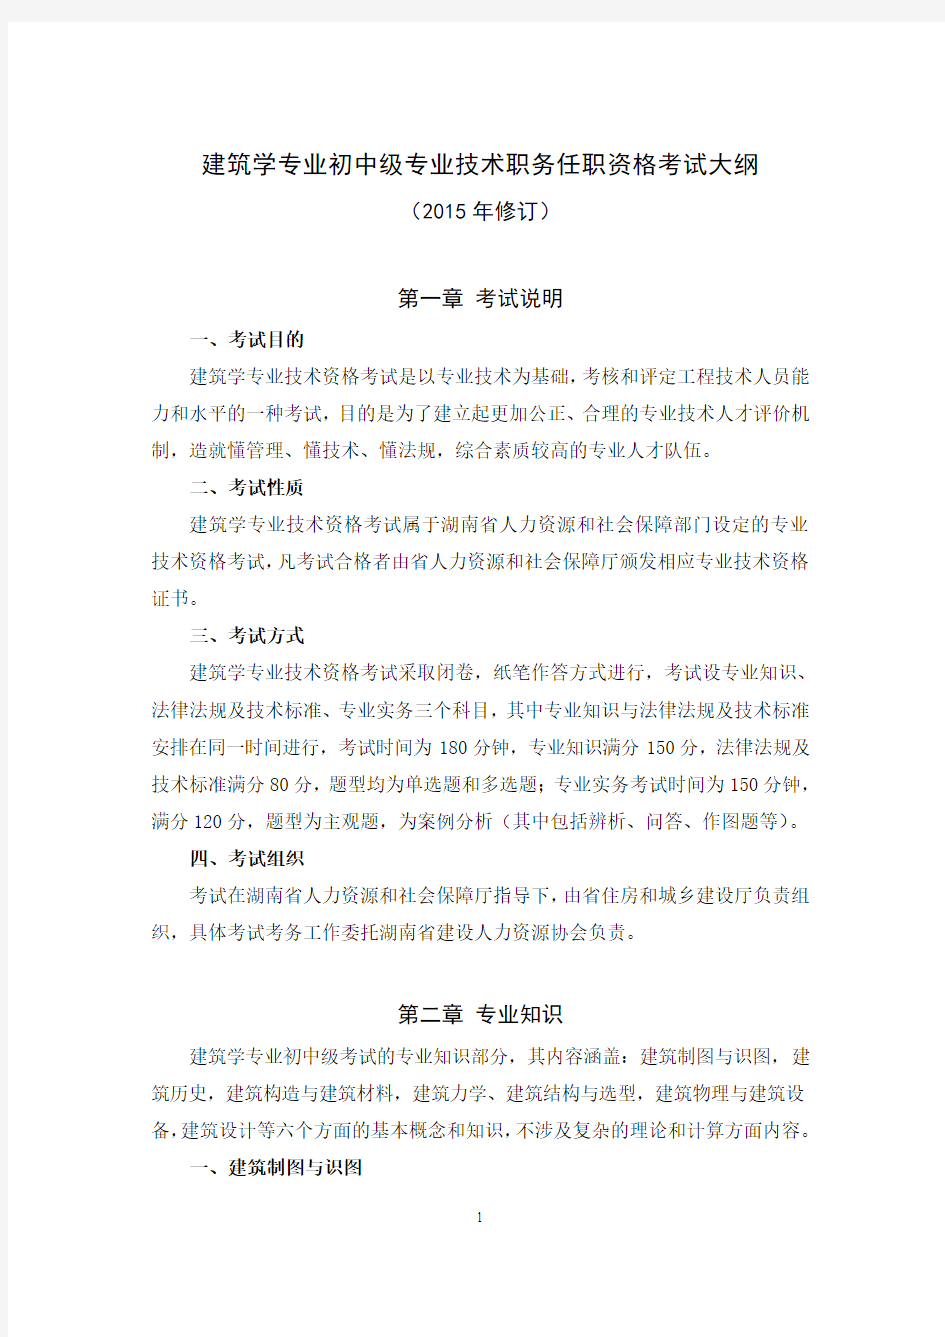 湖南建筑学专业初中级技术职务任职资格考试大纲(201504修订版).